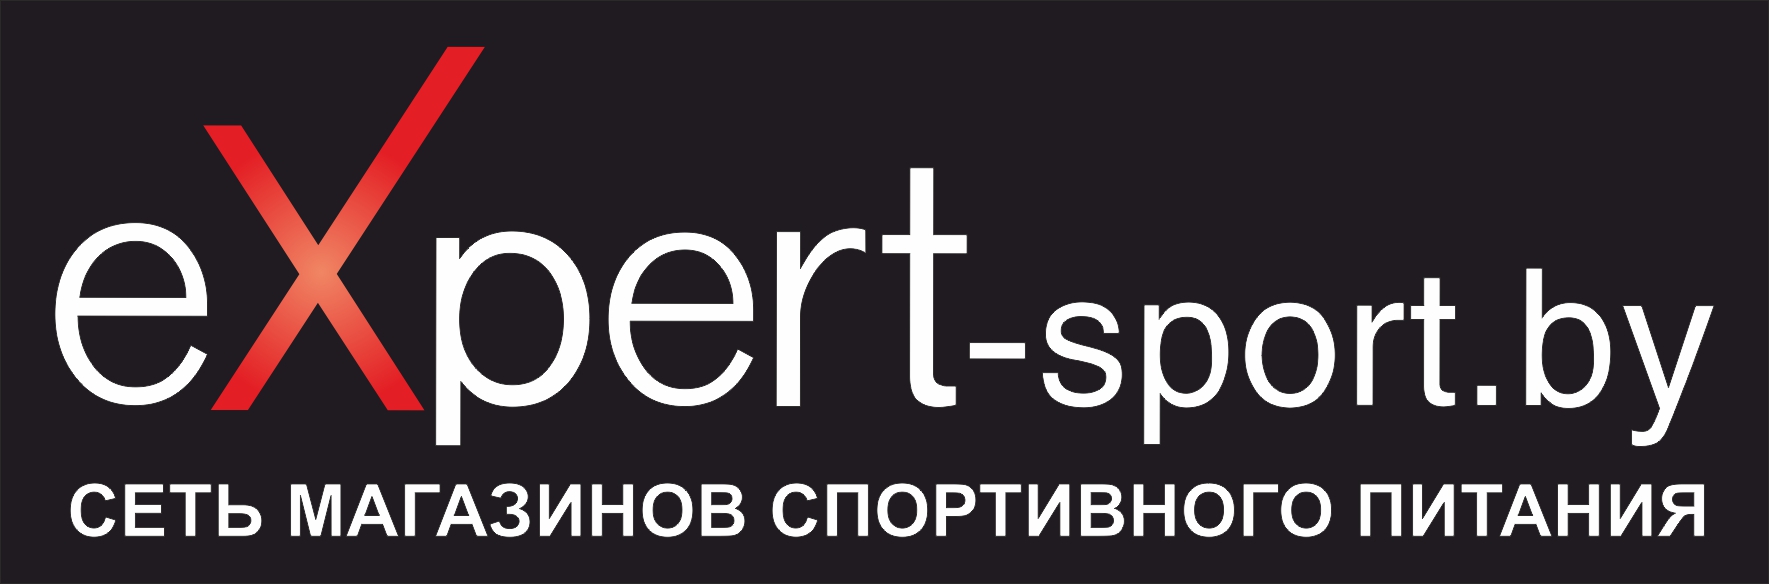 eXpert-sport - магазин спортивного питания и аксессуаров для спорта